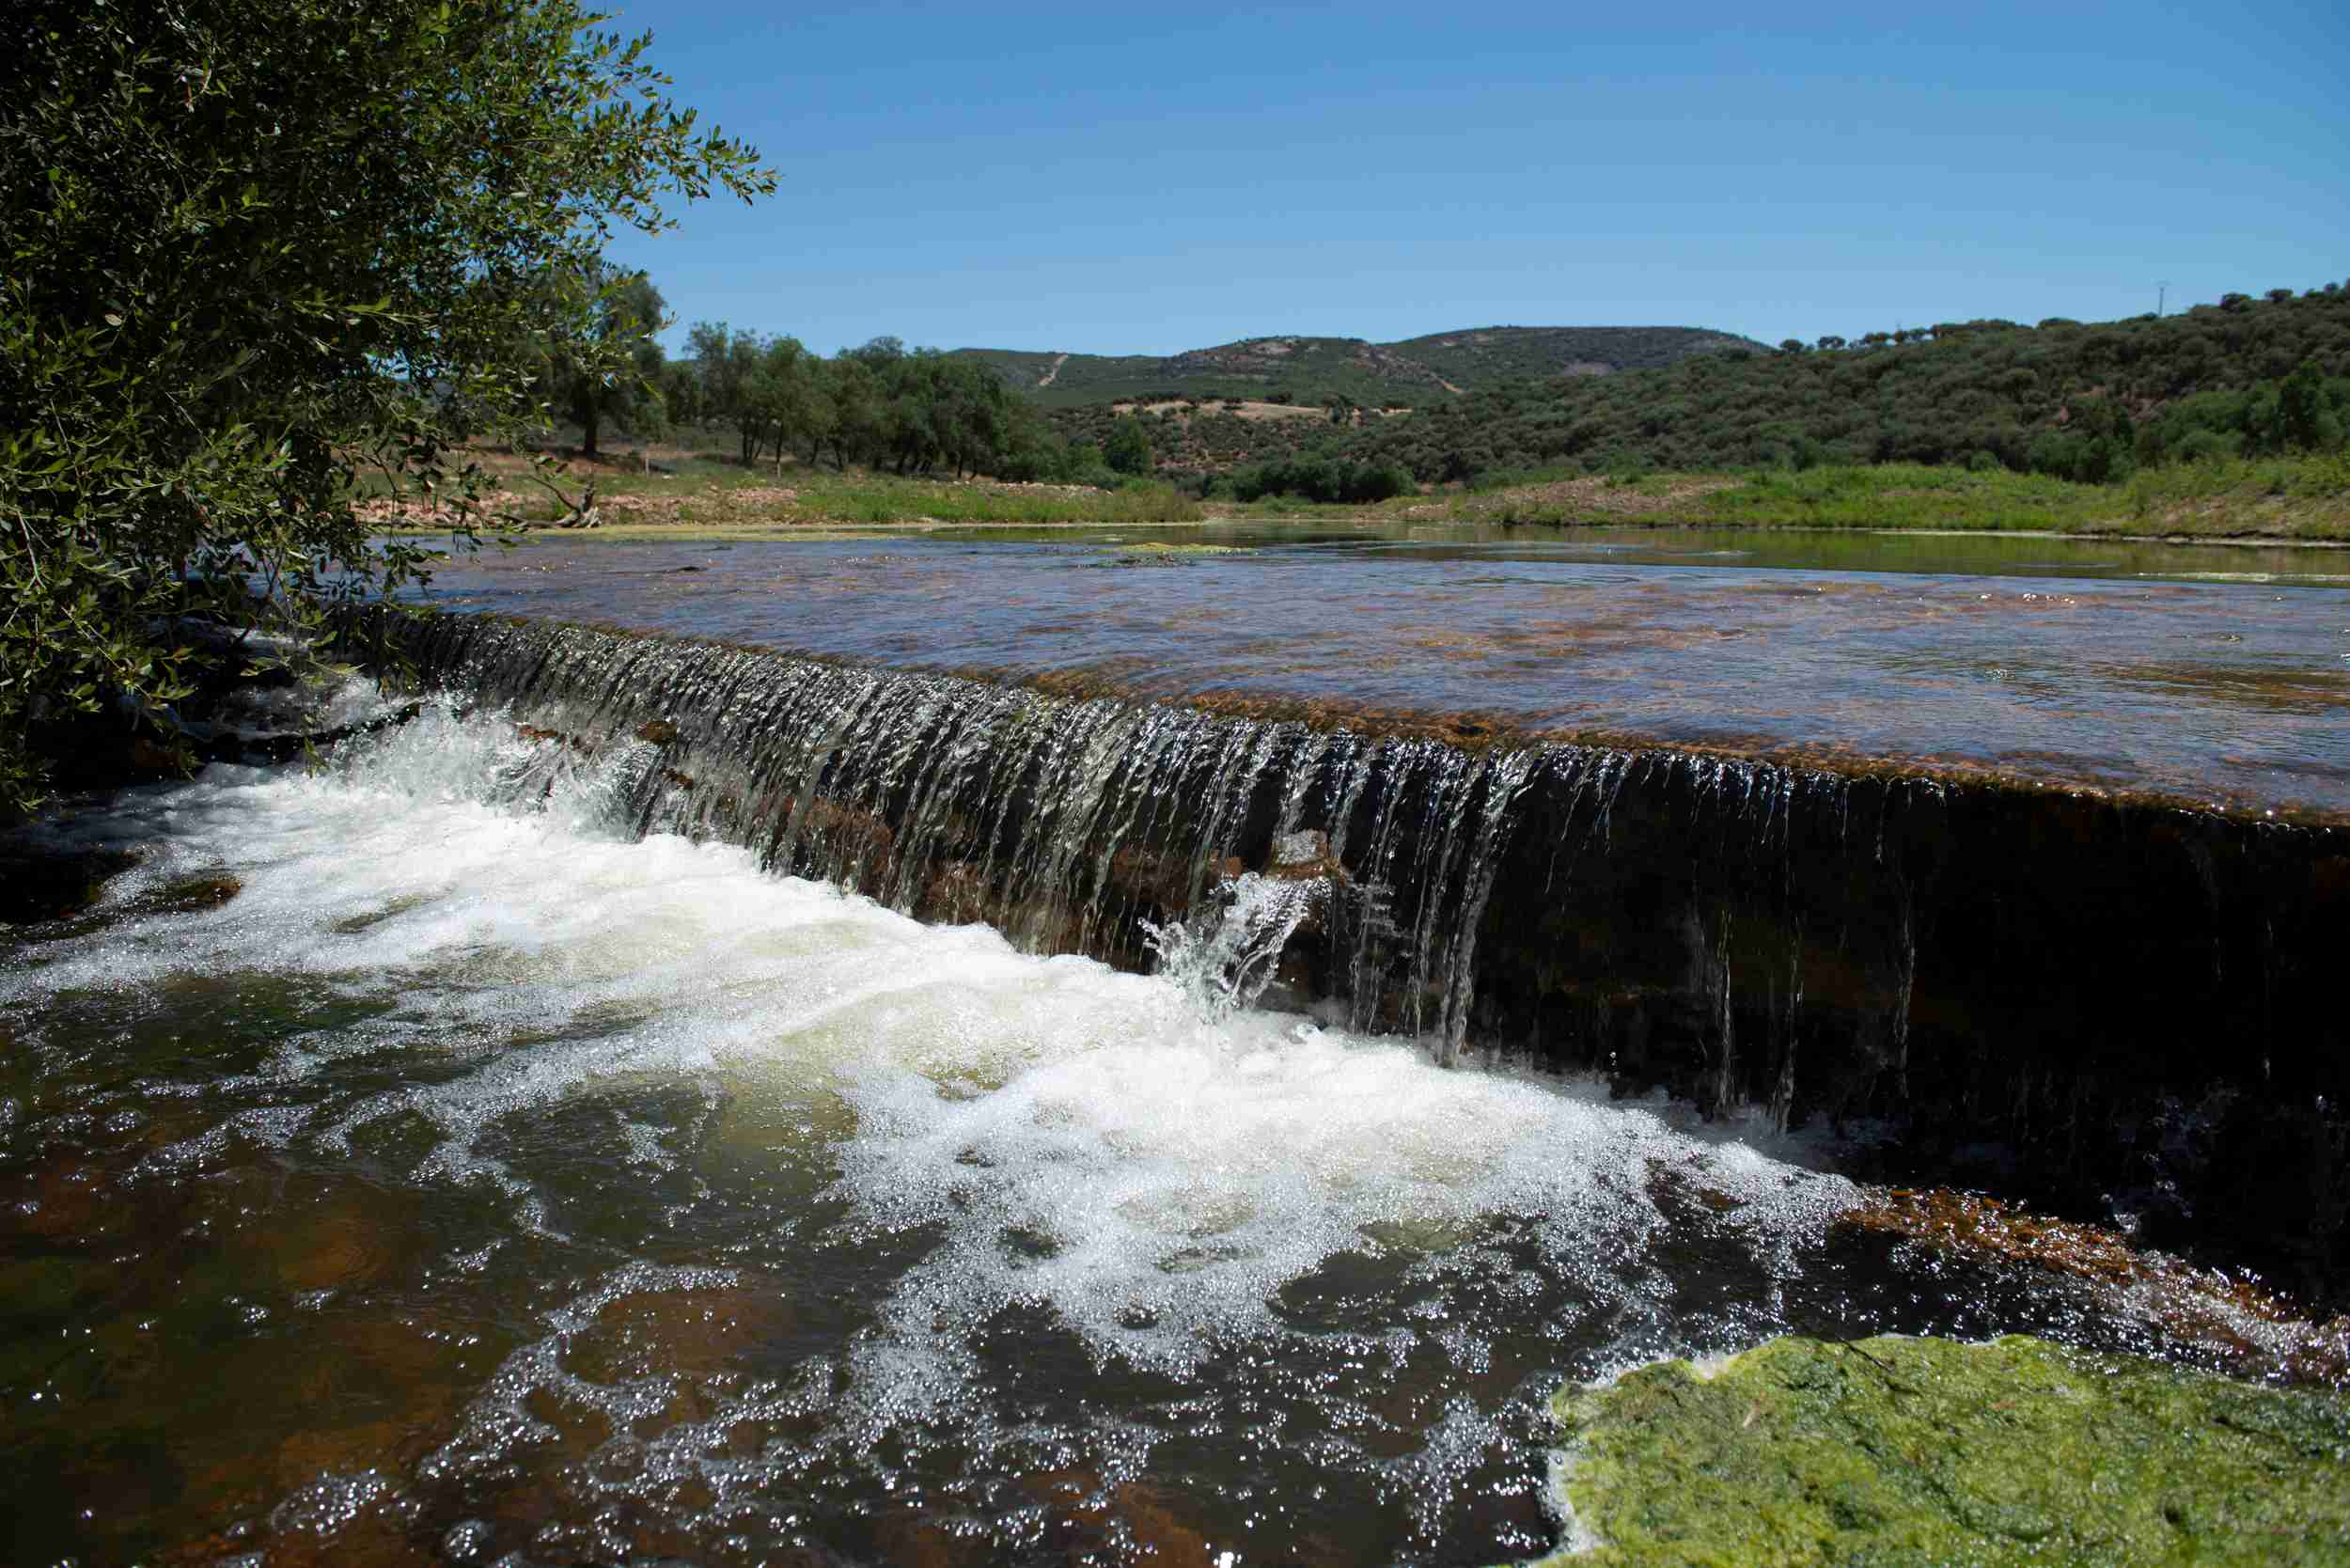 Barreras fluviales presas embalses sequía desertización